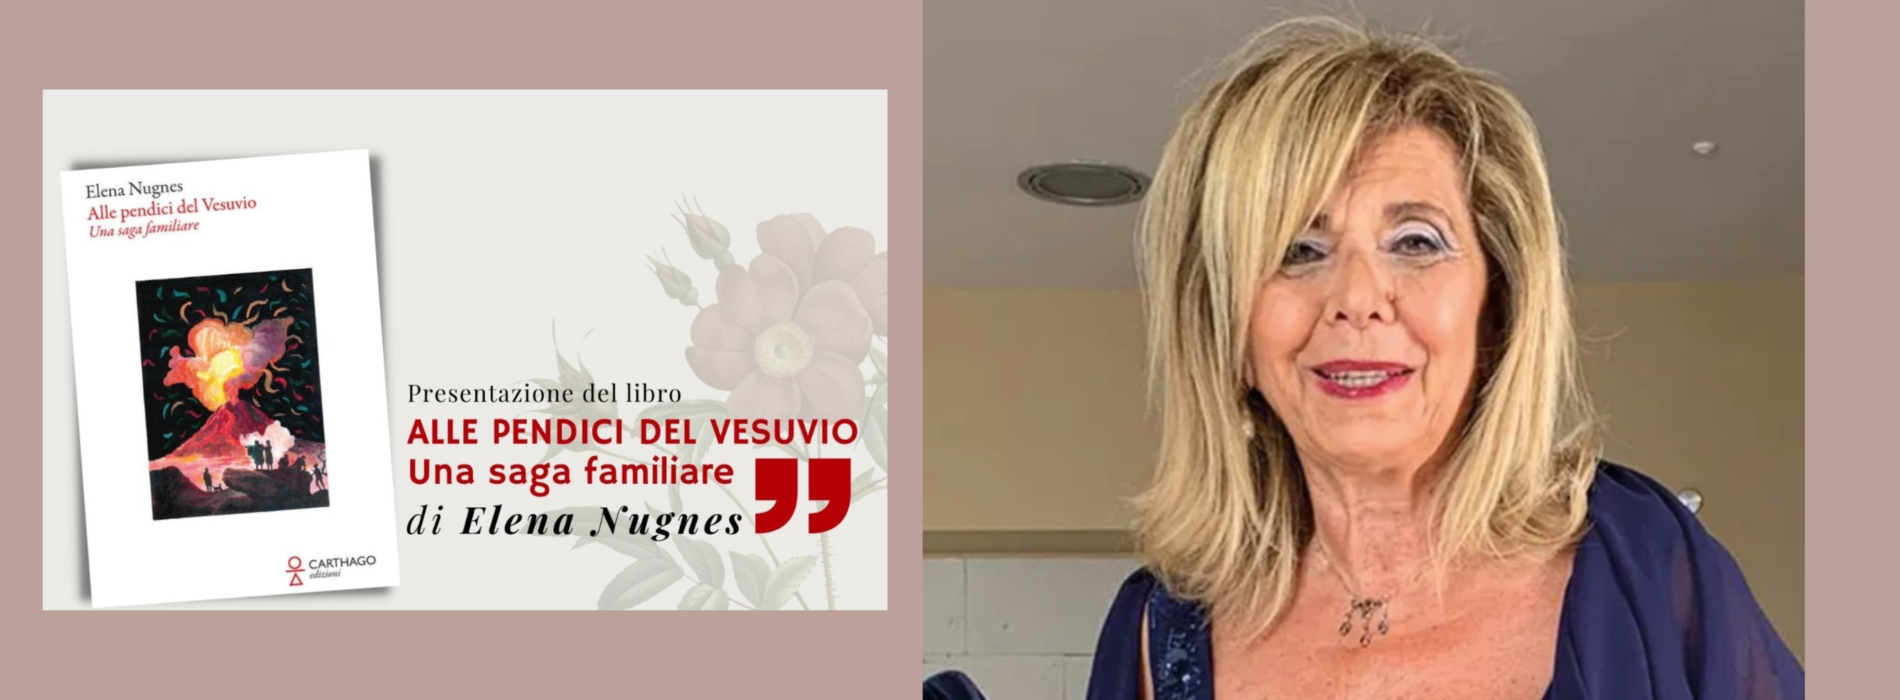 Alle pendici del Vesuvio, il libro di Elena Nugnes ad Aversa